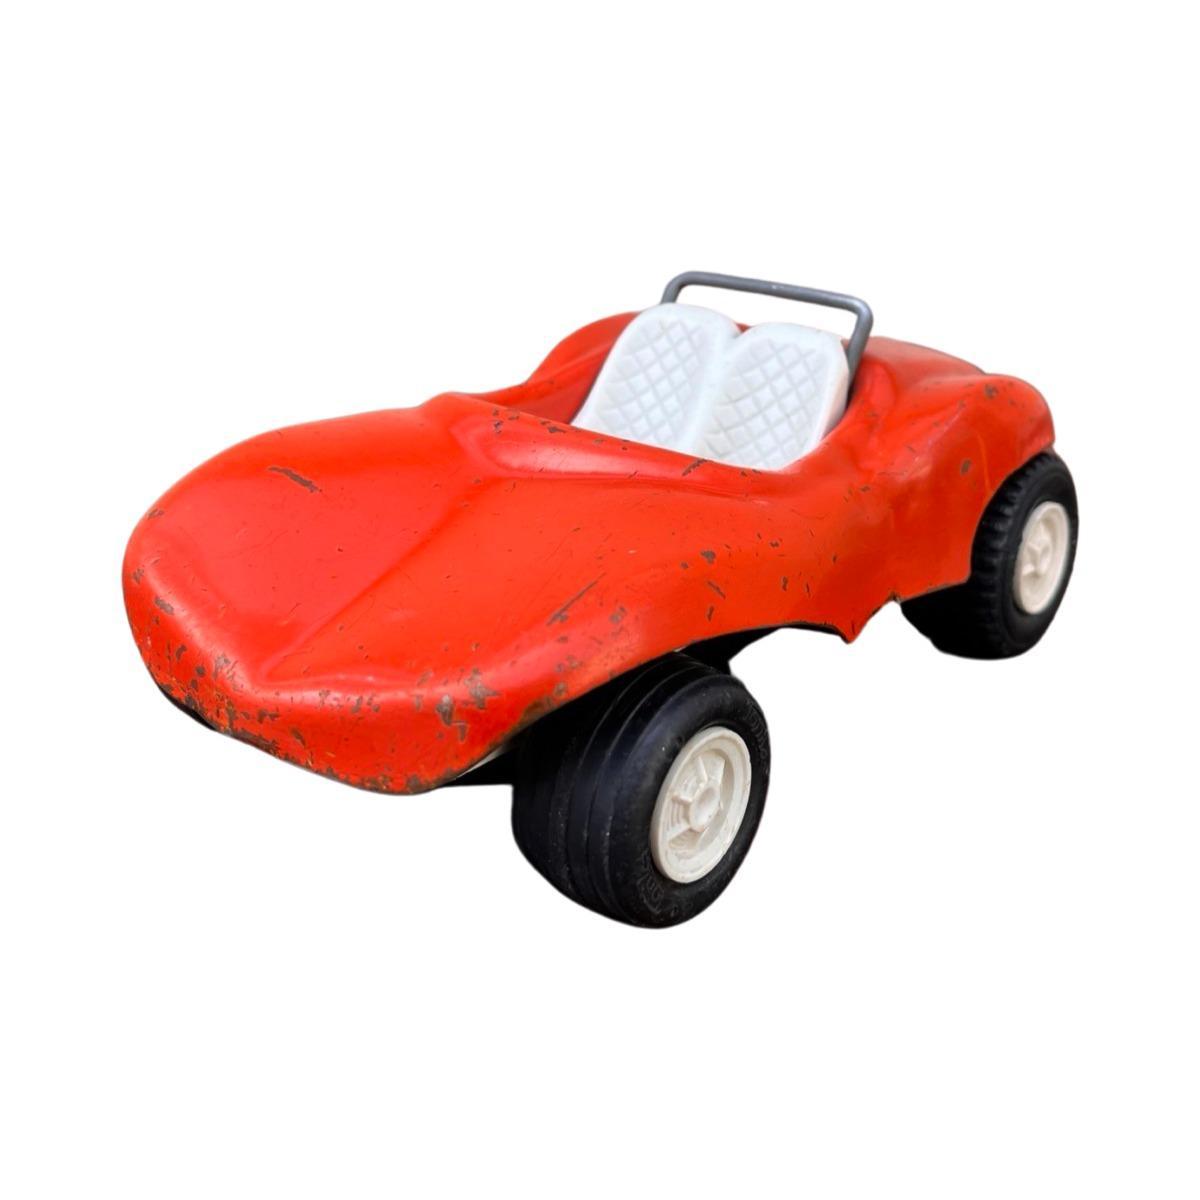 Model samochodu Tonka, Beach Buggy, 1975, czerwony, skala ok. 1:18 0 Full Screen